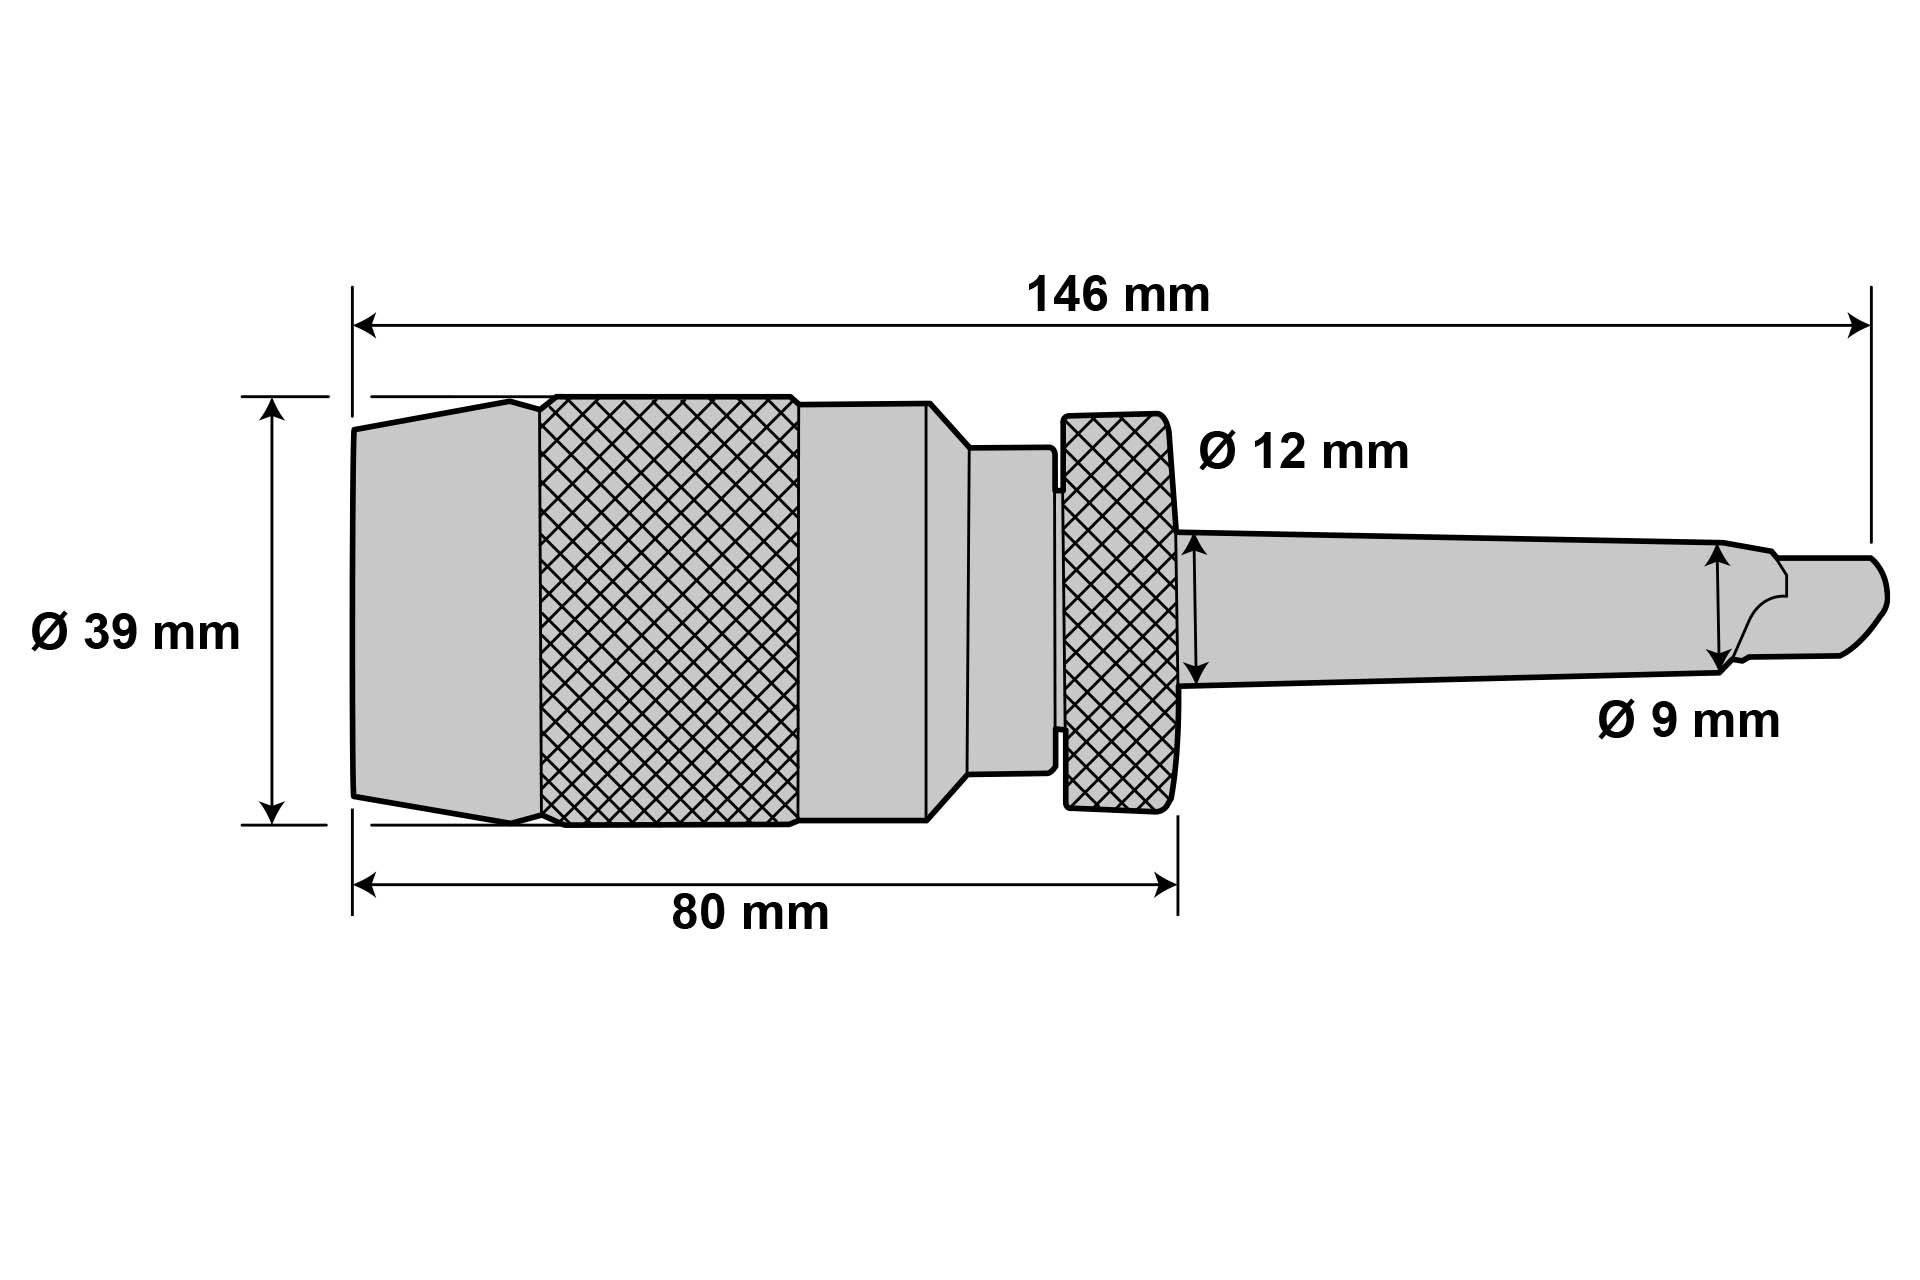 Präzisions-Schnellspann-Bohrfutter 1 - 10 mm MK1